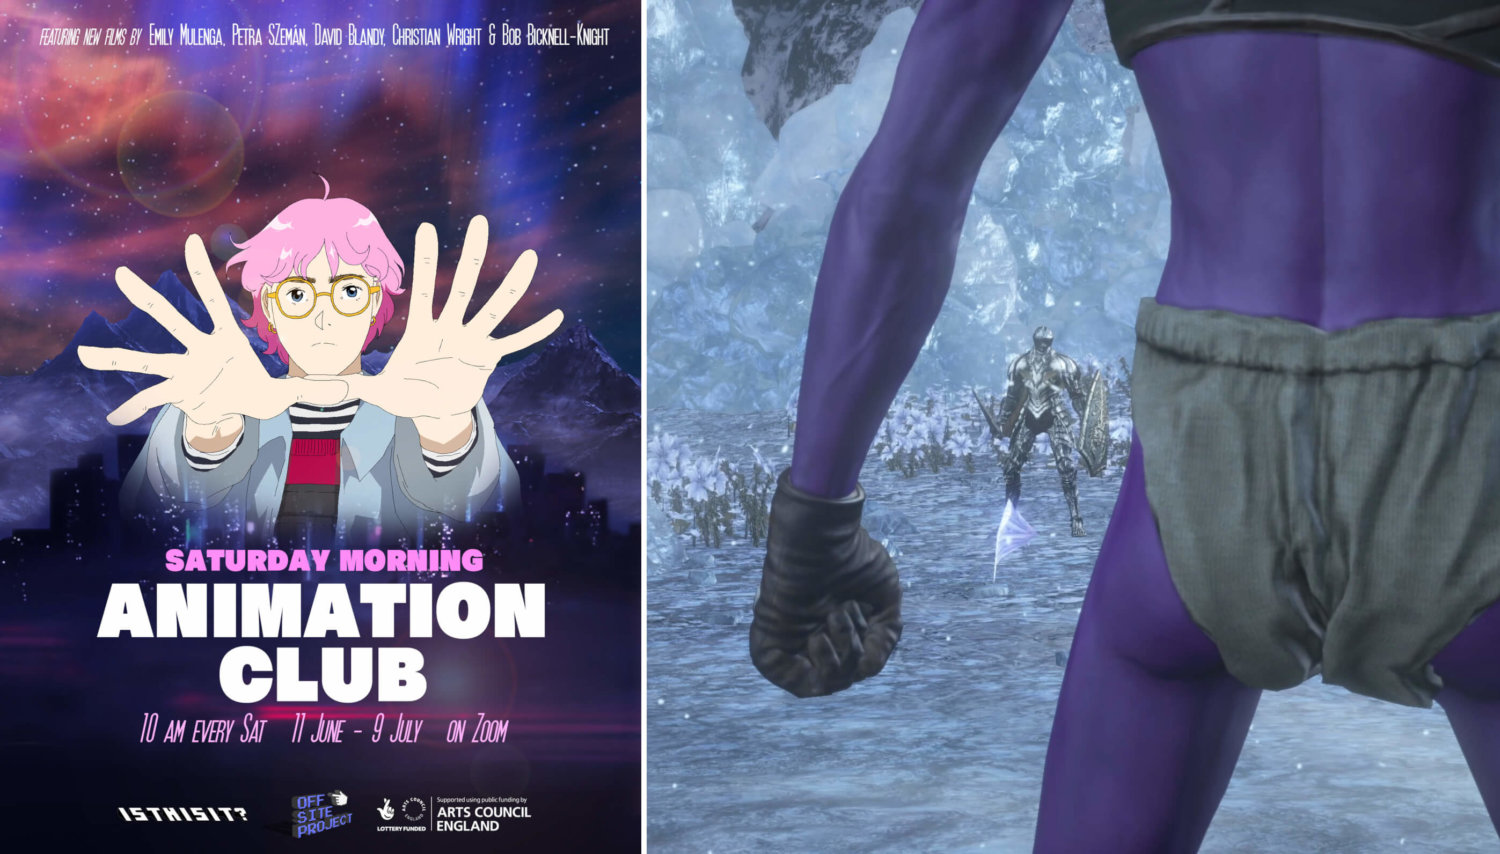 Links eine Art Kinoposter für den Saturday Morning Animation Club mit einer Anime-Figur von Petra Szemán, die die Hände ausstreckt. Rechts ein Still von Christian Wright, es zeigt ein lilafarbenes Wesen die Faust geballt, gegenüber eine Figur in Rüstung.